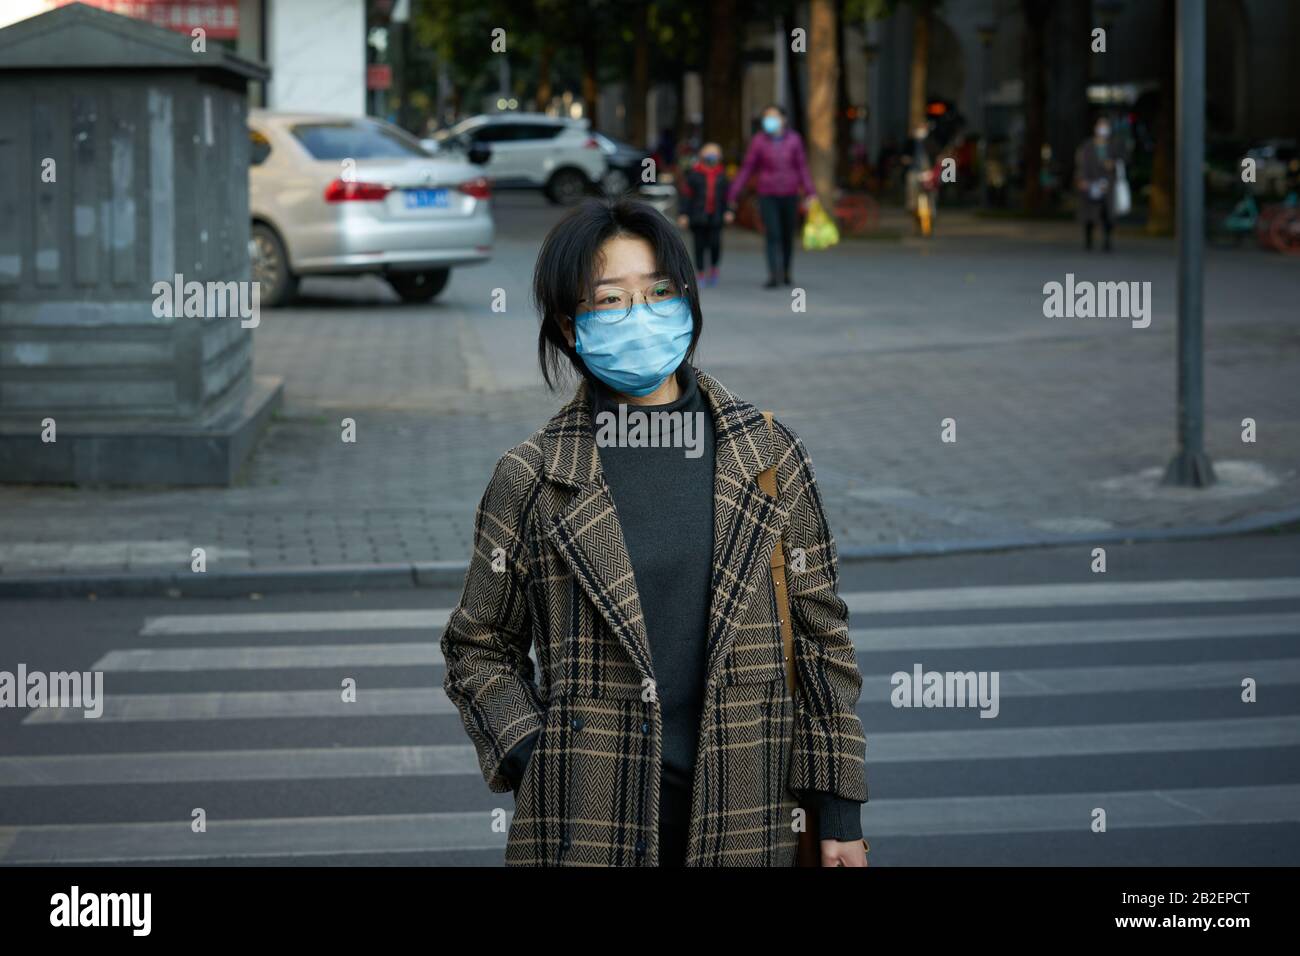 Durante el brote de enfermedad de coronavirus que se extiende al planeta, la gente está usando una máscara quirúrgica en la calle para prevenir la enfermedad de coronavirus. Foto de stock